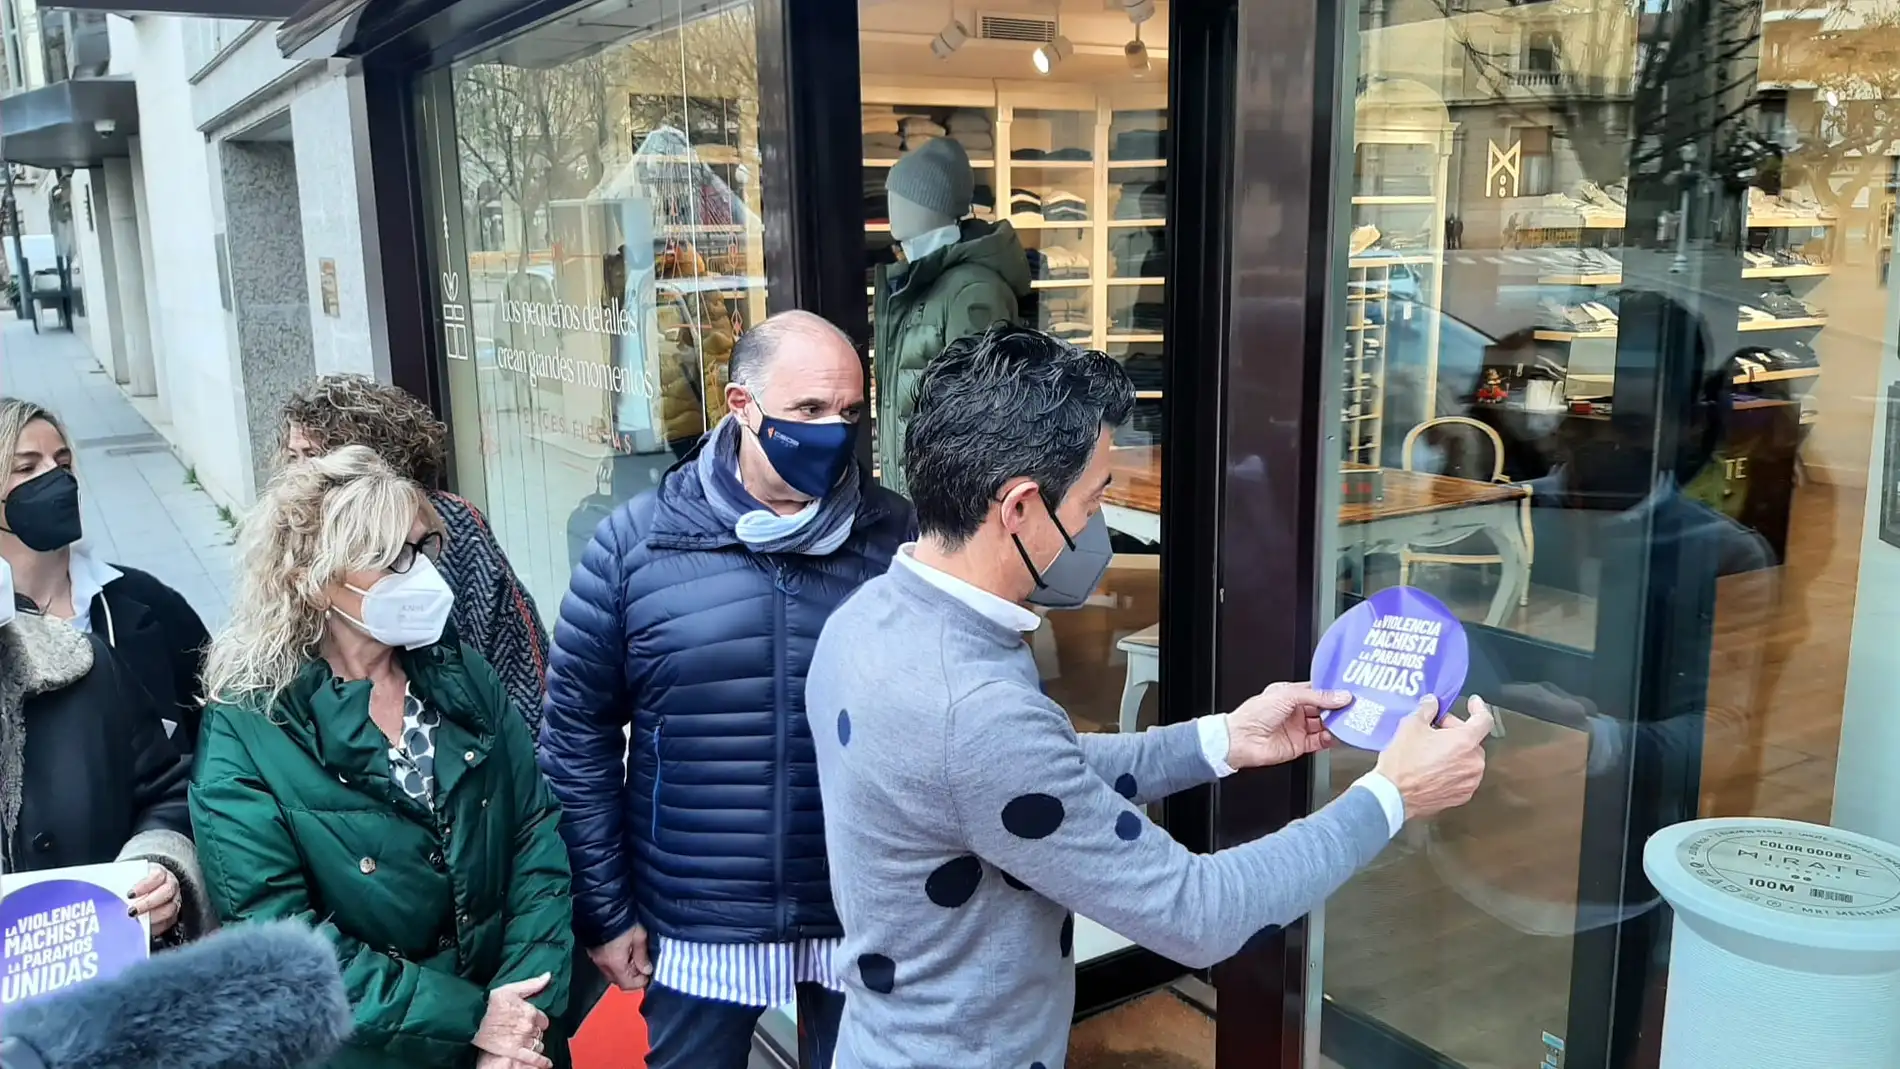 CEOS Cepyme Huesca se suma a la campaña "Punto Violeta"